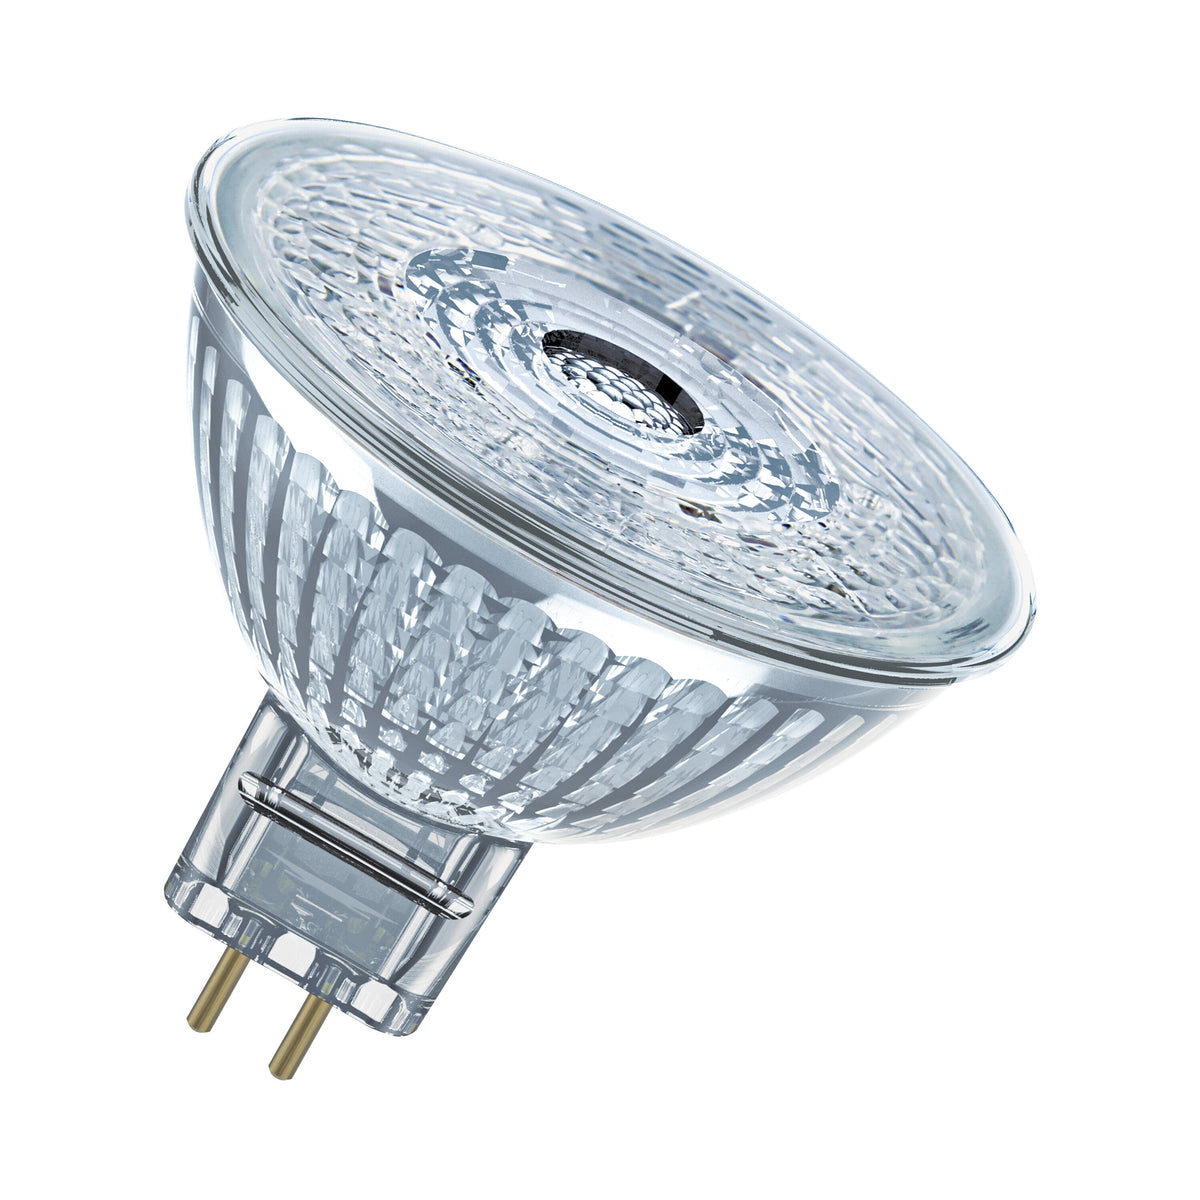 OSRAM Star Reflektor LED-Lampe für GU5.3-Sockel, klares Glas ,Warmweiß (2700K), 345 Lumen, Ersatz für herkömmliche 35W-Leuchtmittel, nicht dimmbar, 2-er Pack